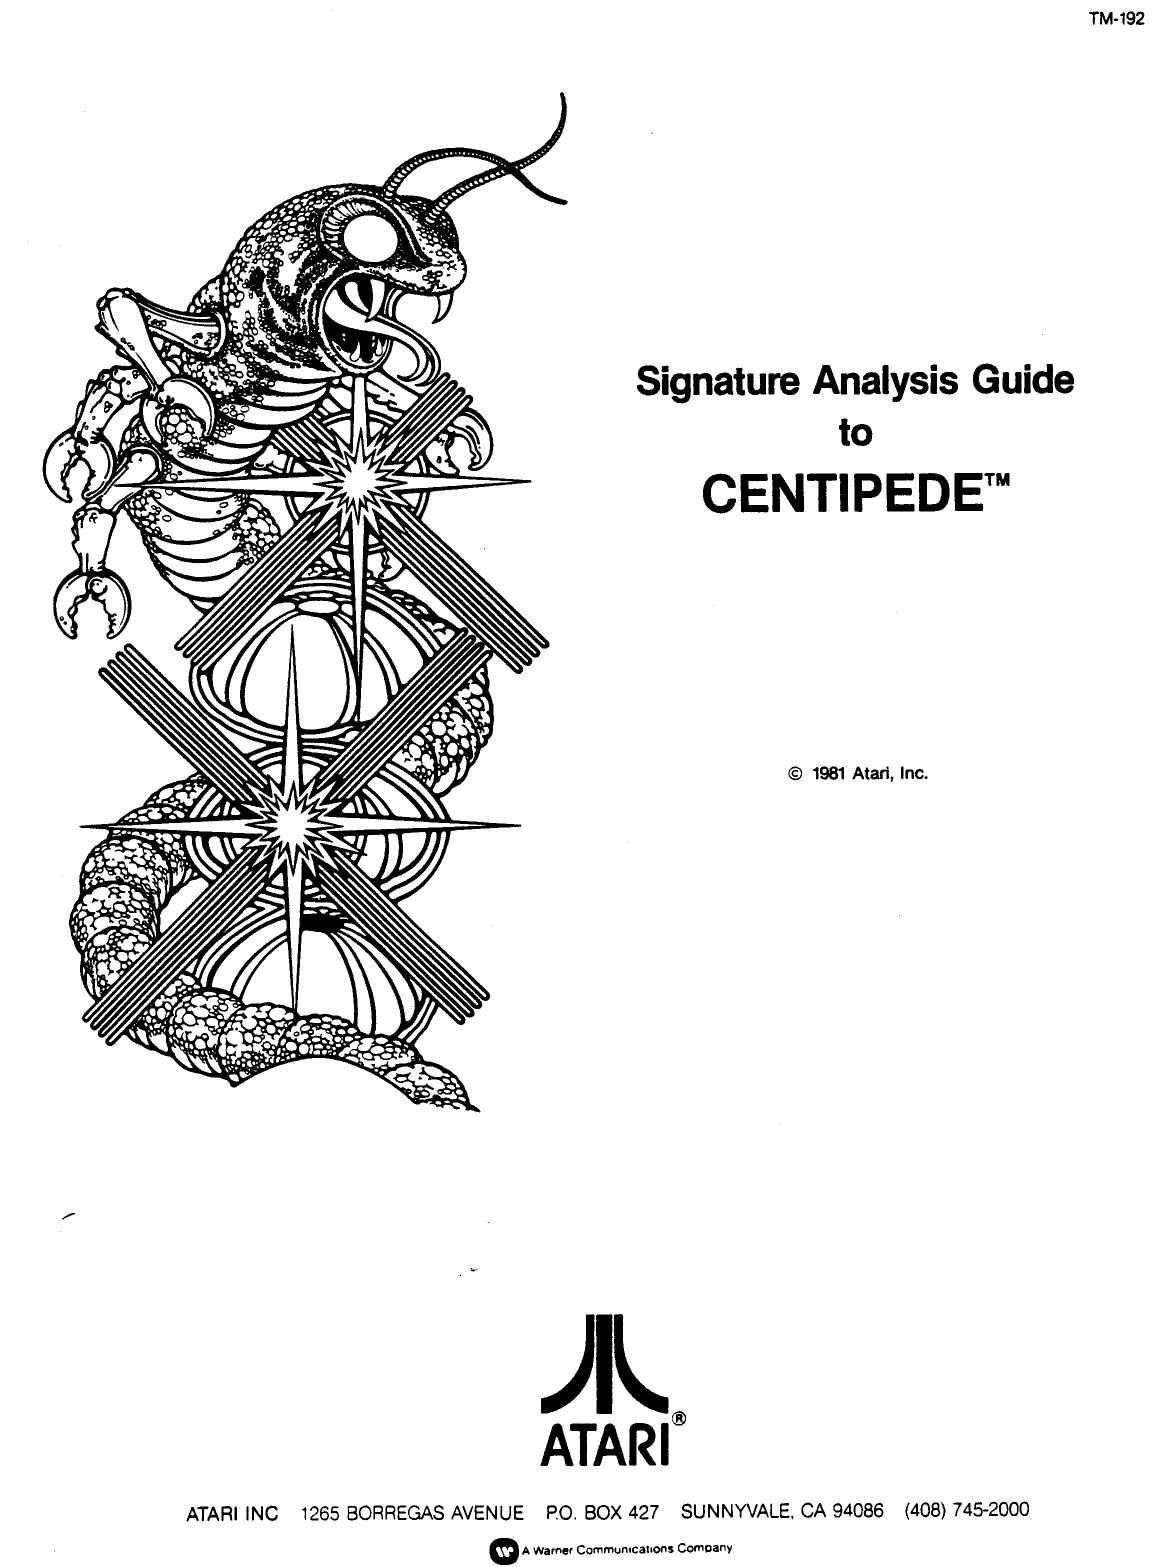 Centipede (TM-192) (Signature Analysis Guide) (U)